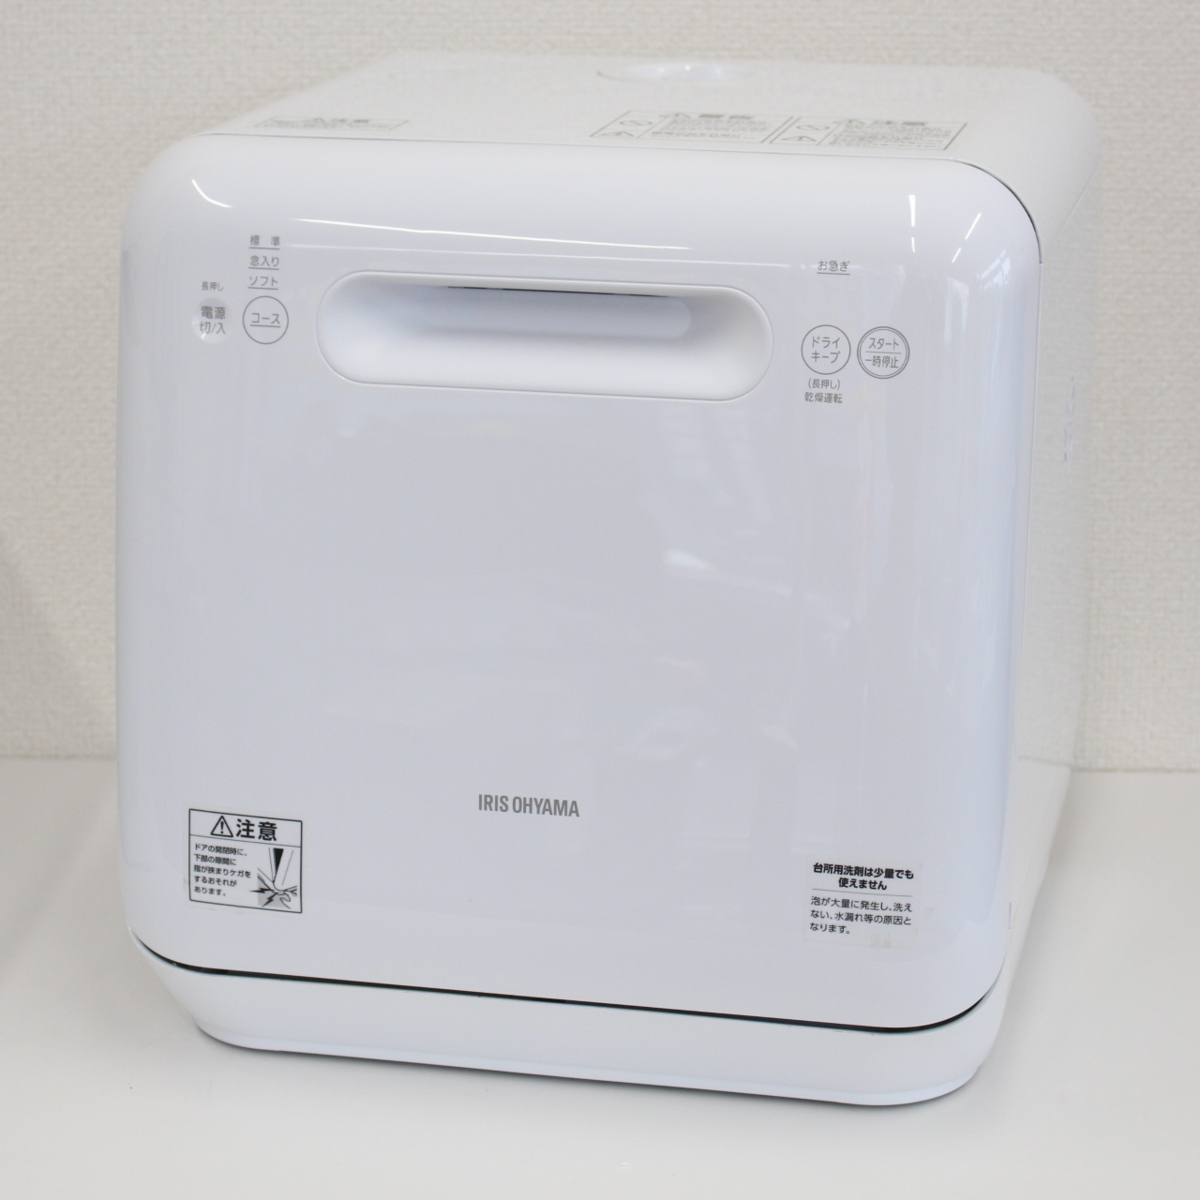 東京都文京区にて アイリスオーヤマ 食器洗い乾燥機 ISHT-5000 2019年製 を出張買取させて頂きました。